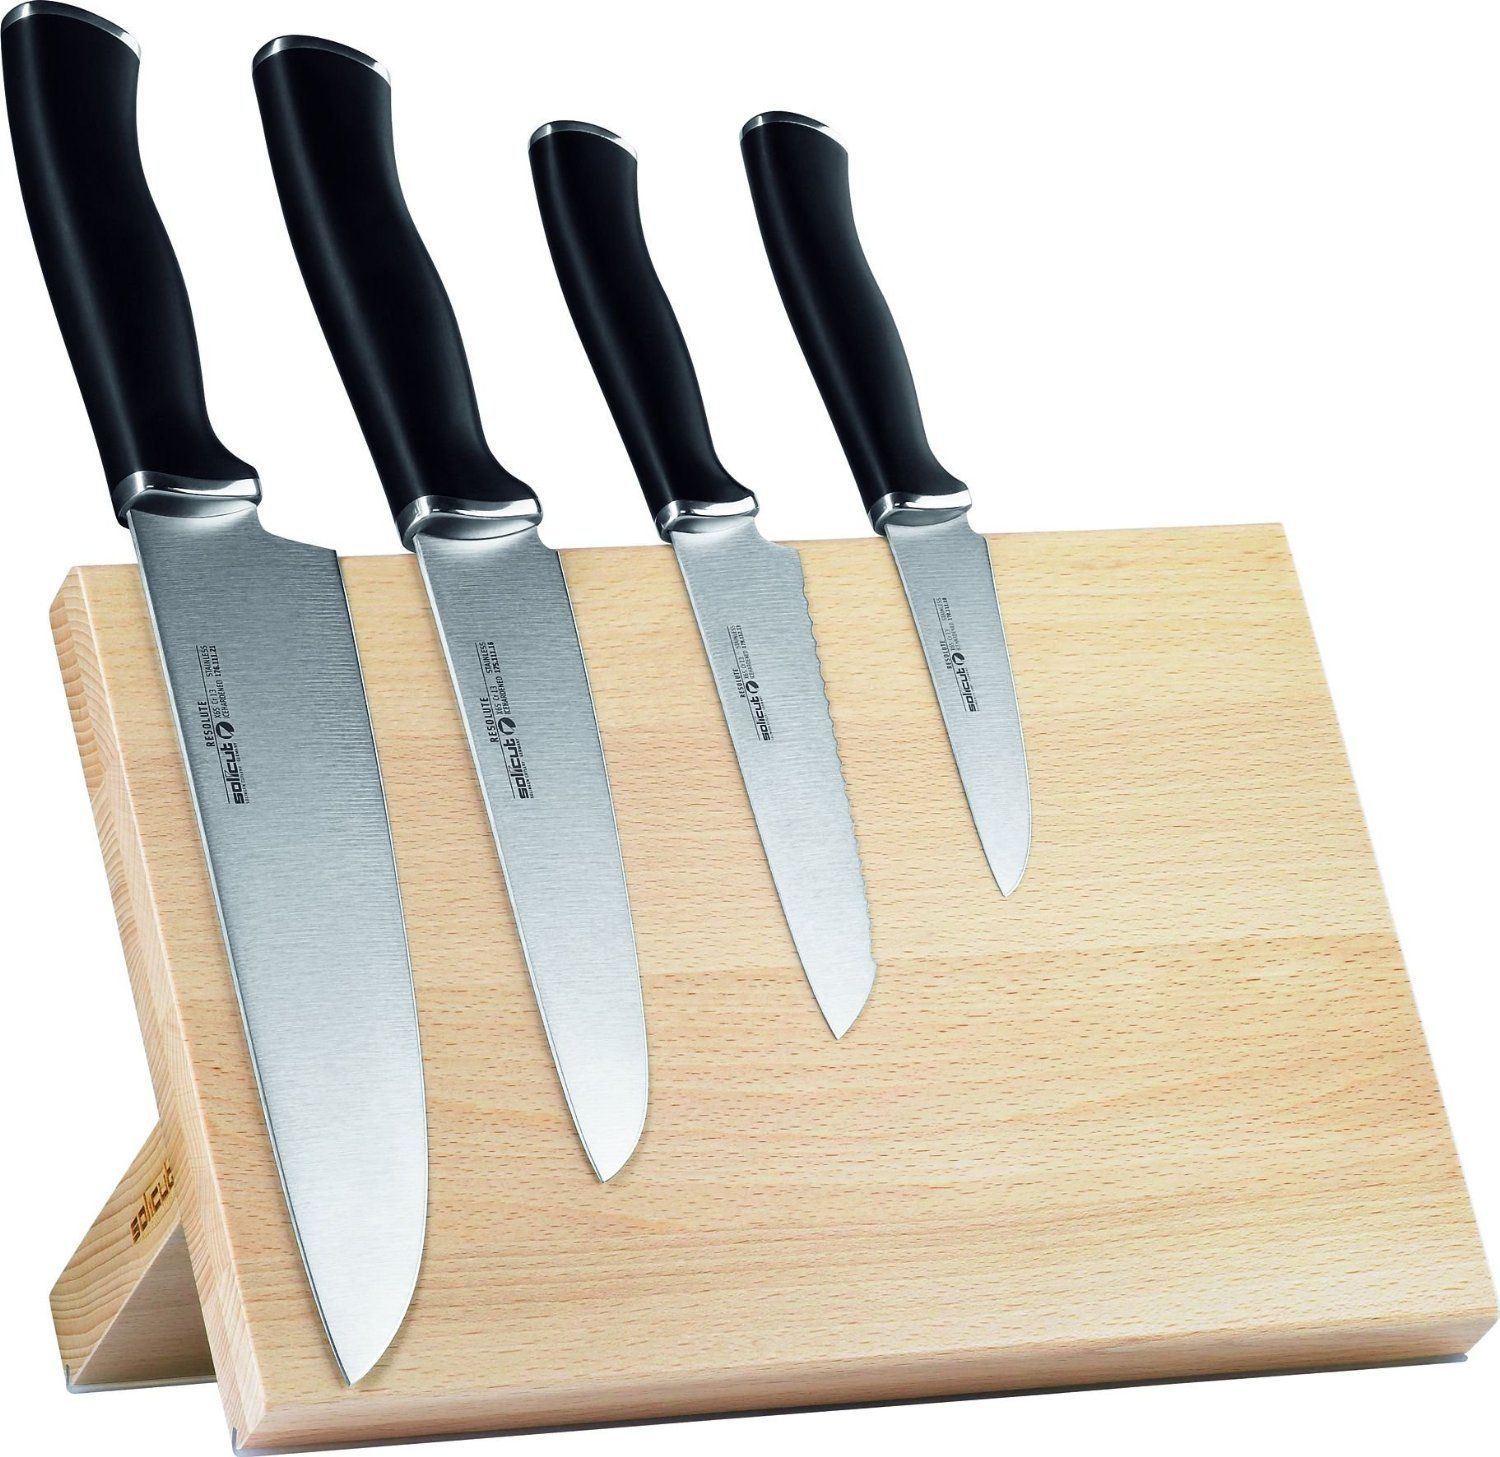 Где купить кухонные ножи